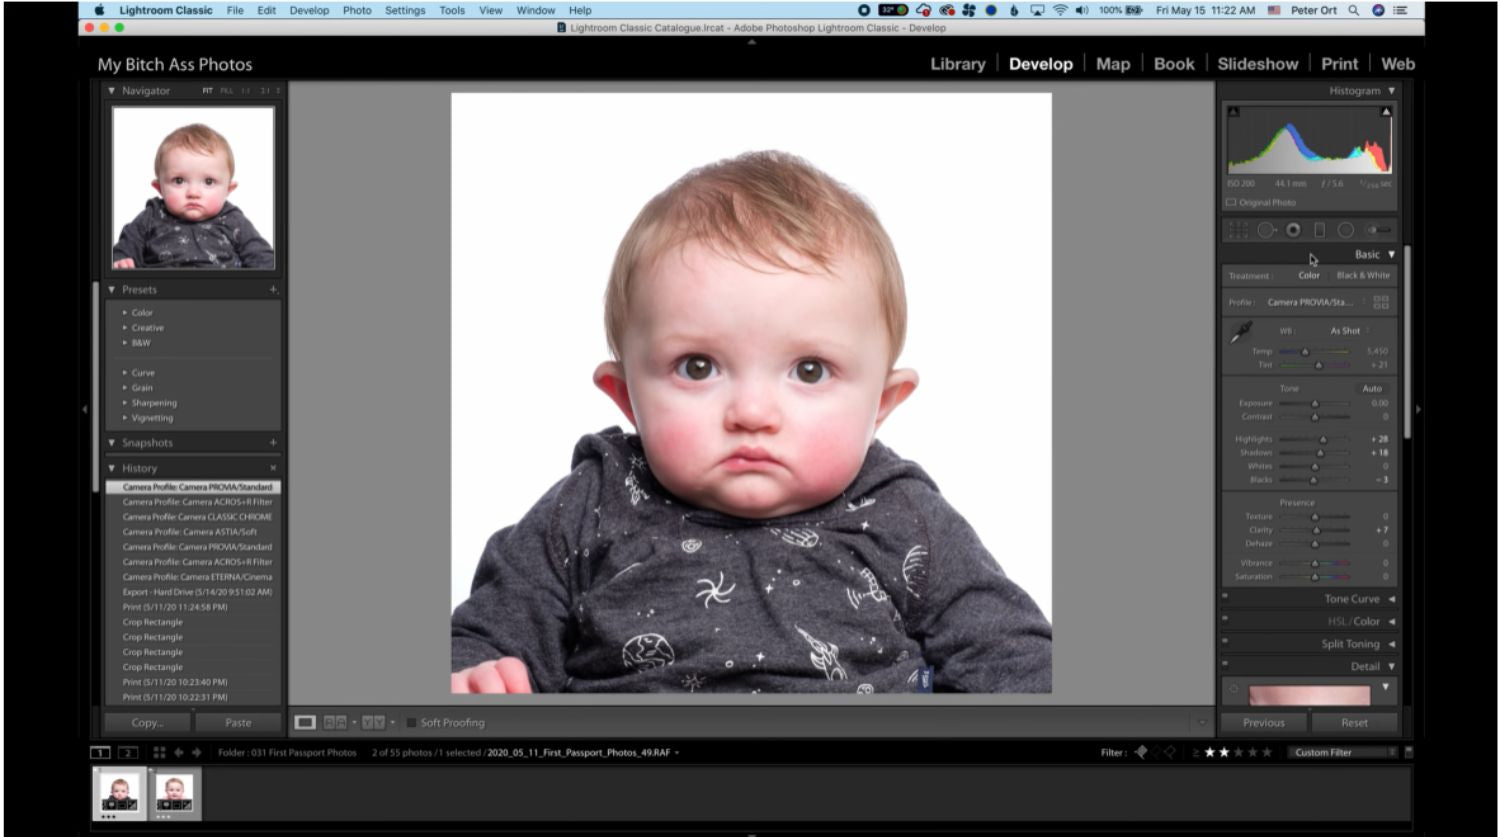 photoshoot tutorial for baby's passport photo